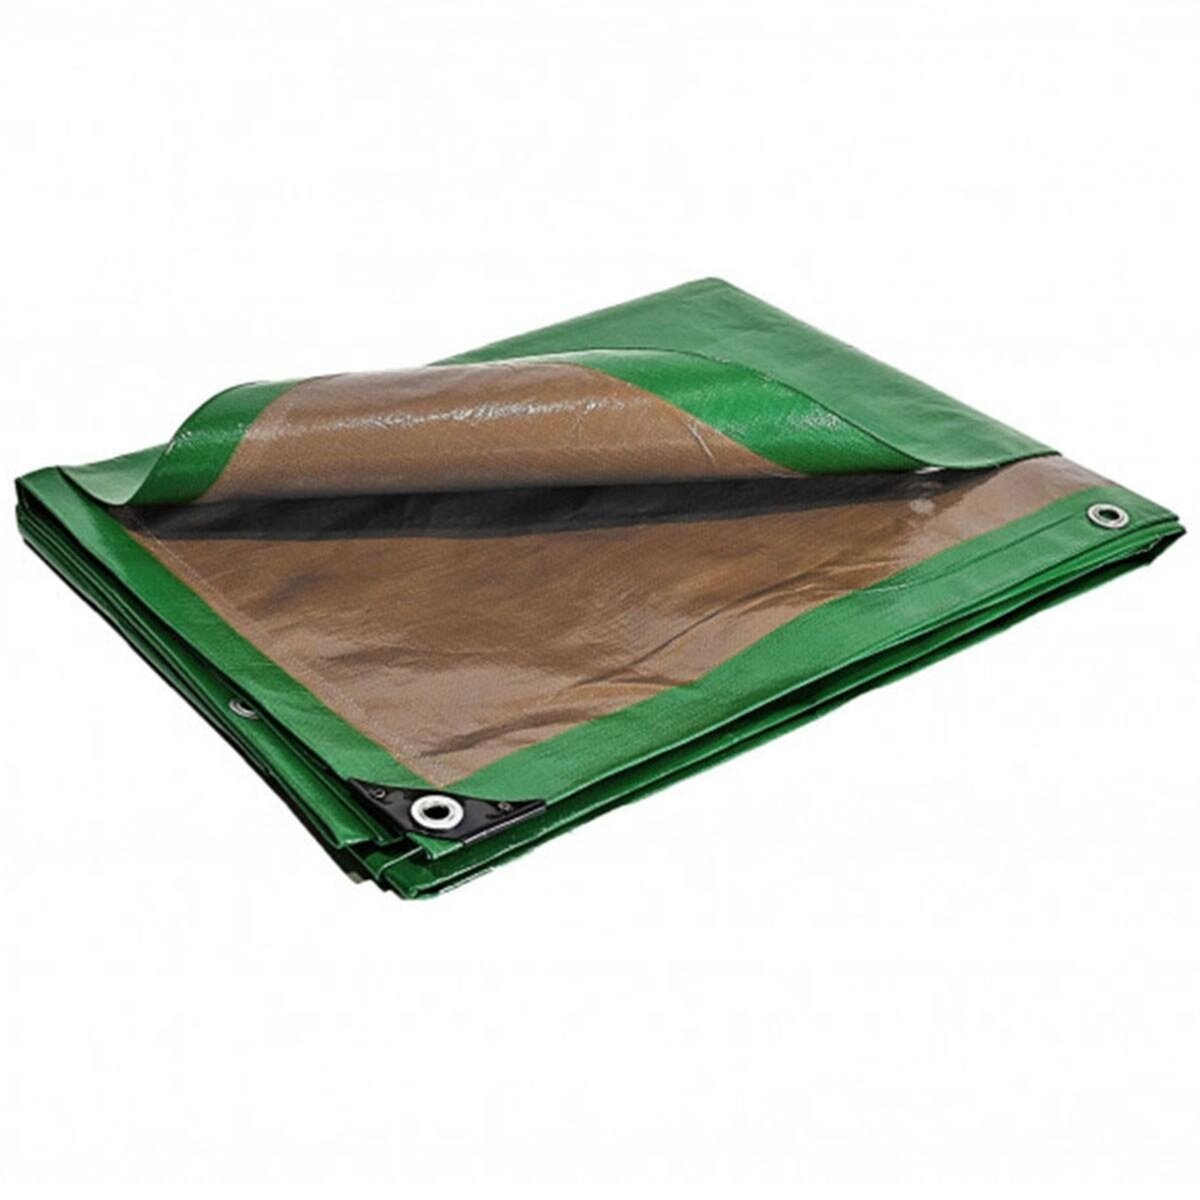 Tecplast Bâche plastique 8x12 m étanche traitée anti UV verte et marron 250g/m2 - bâche de protection polyéthylène haute qualité